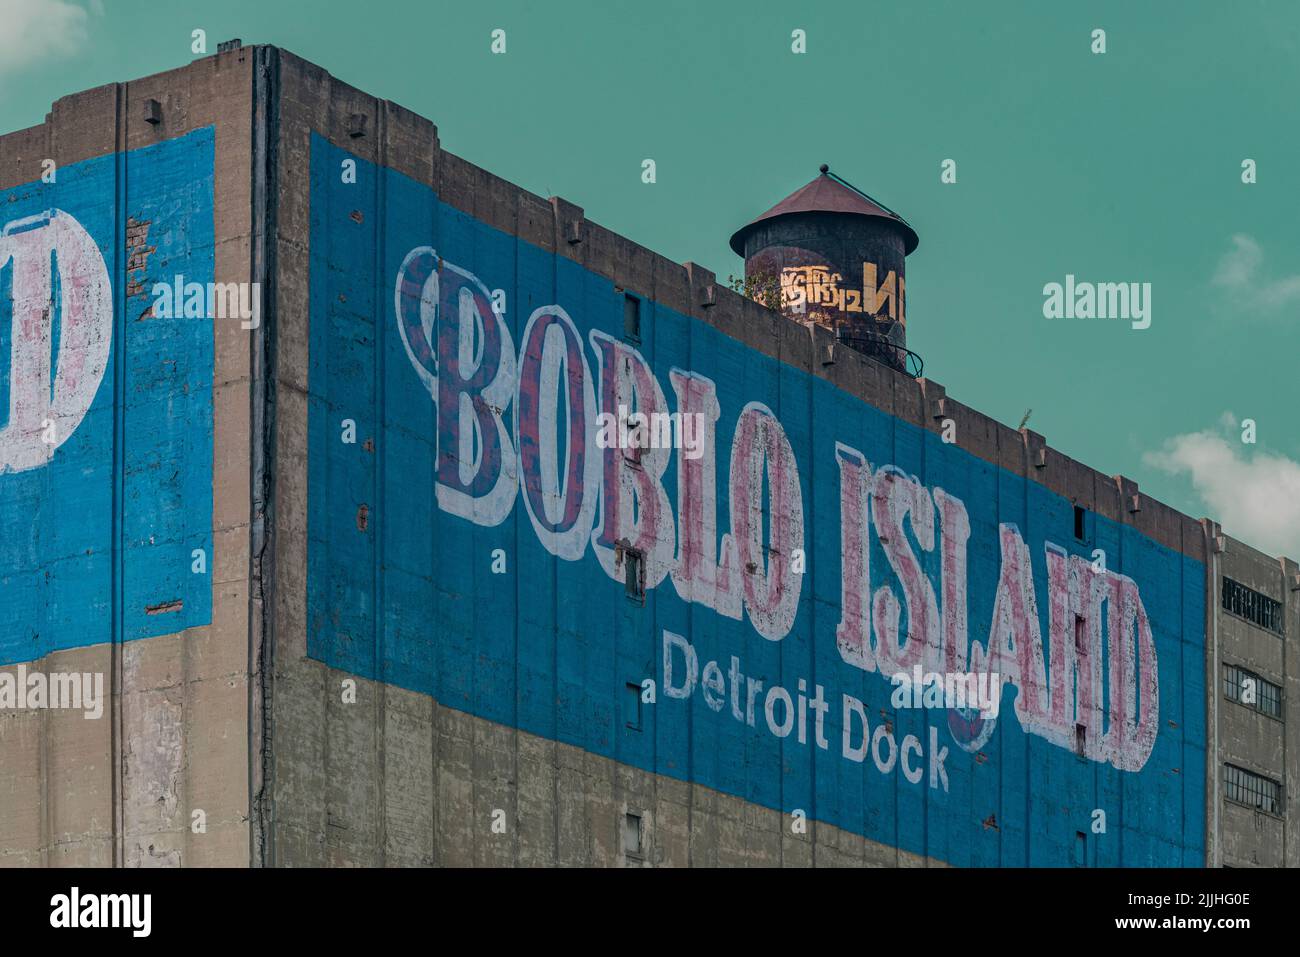 Panneau mural de l'île Boblo de Detroit Dock sur le bâtiment du terminal de Detroit Harbor, Detroit, Michigan, Wayne County, États-Unis Banque D'Images